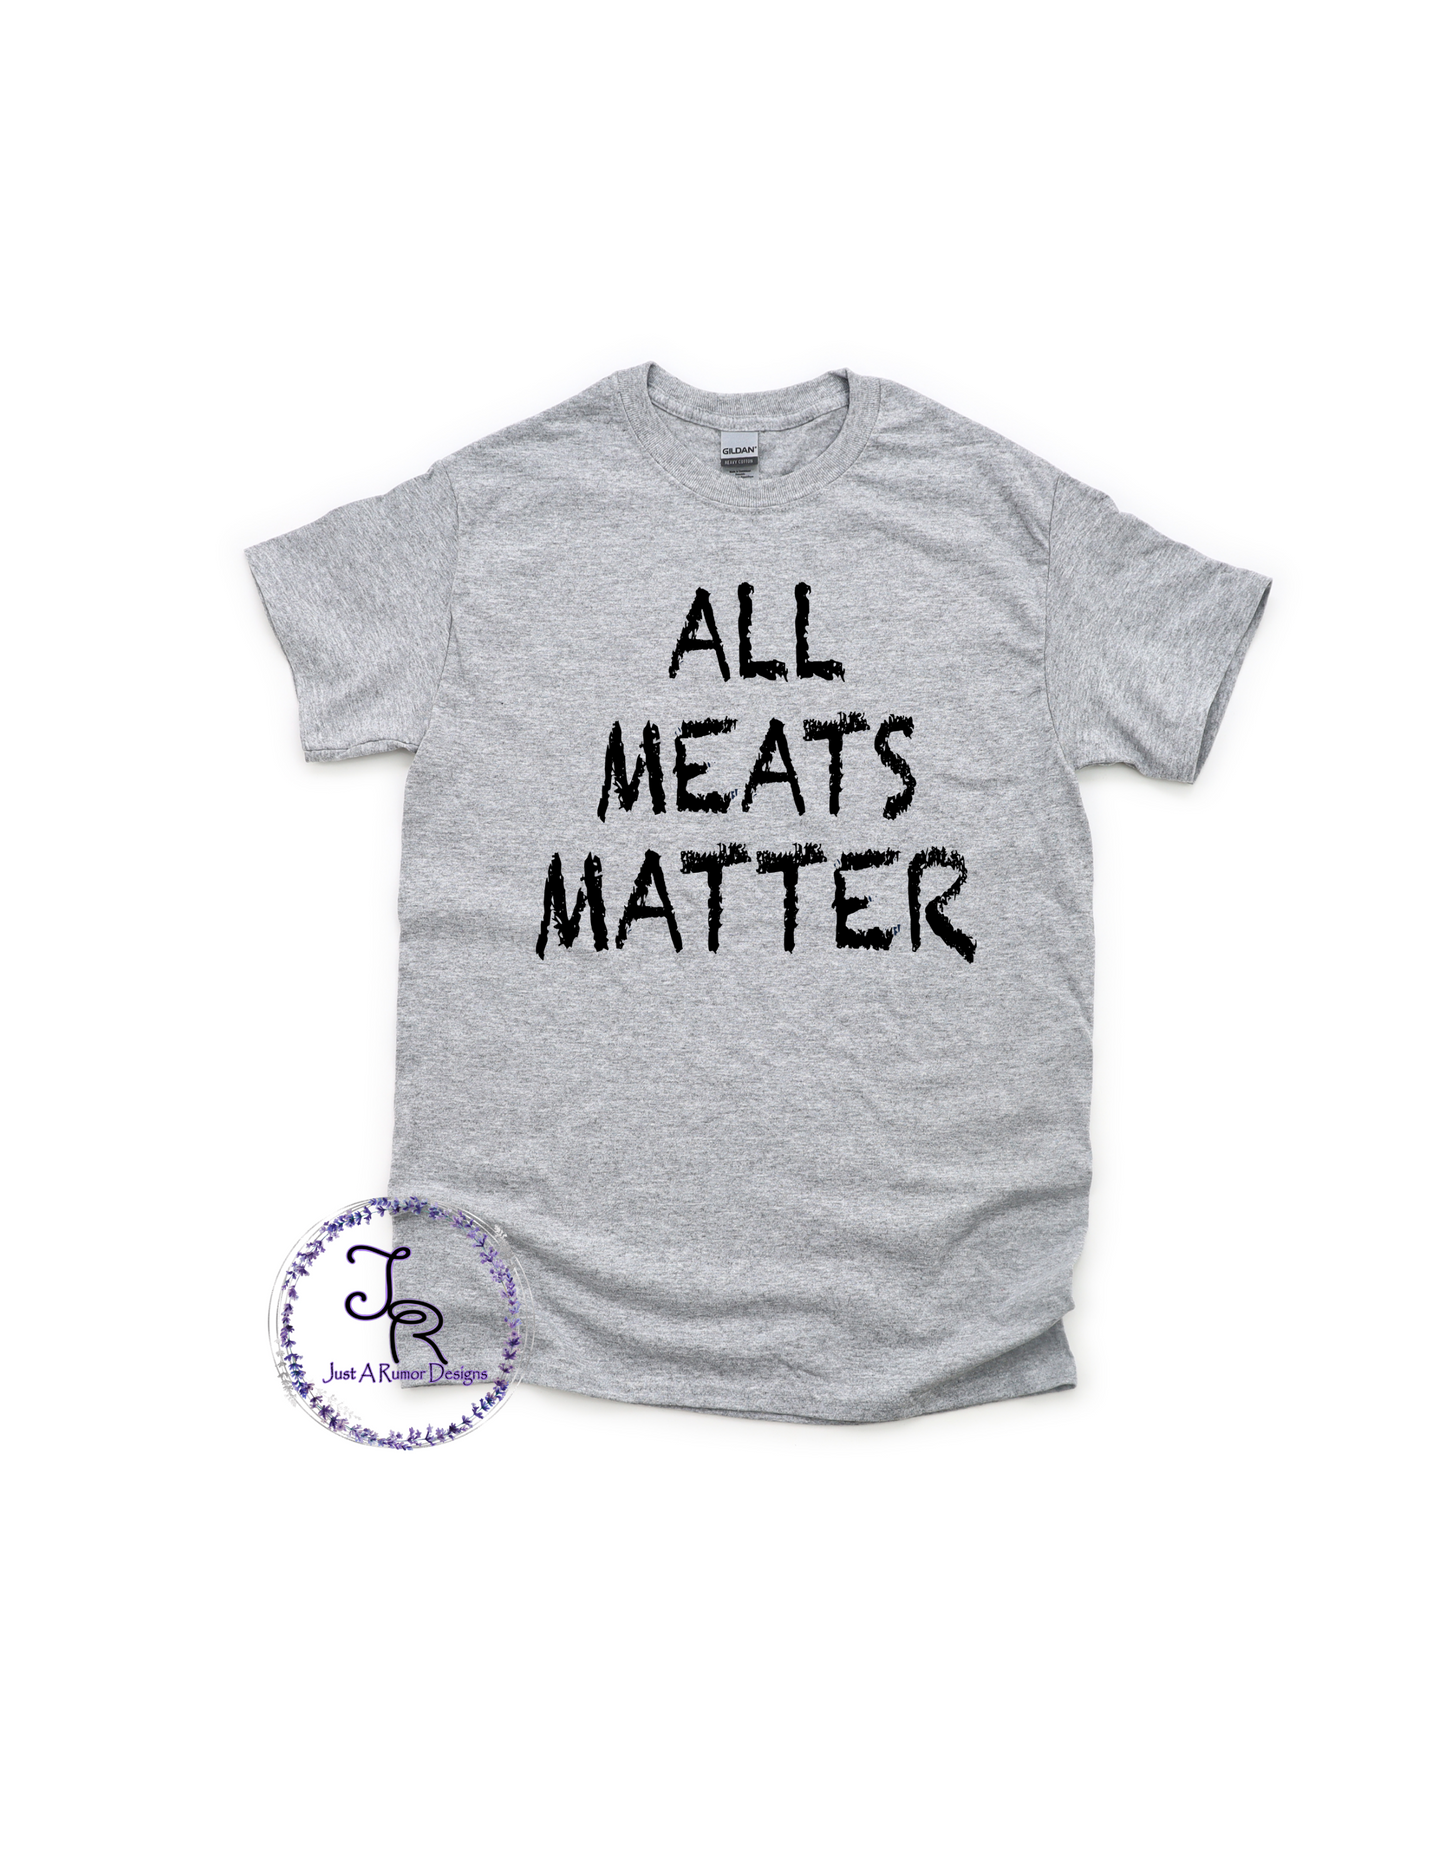 All Meats Matter Shirt